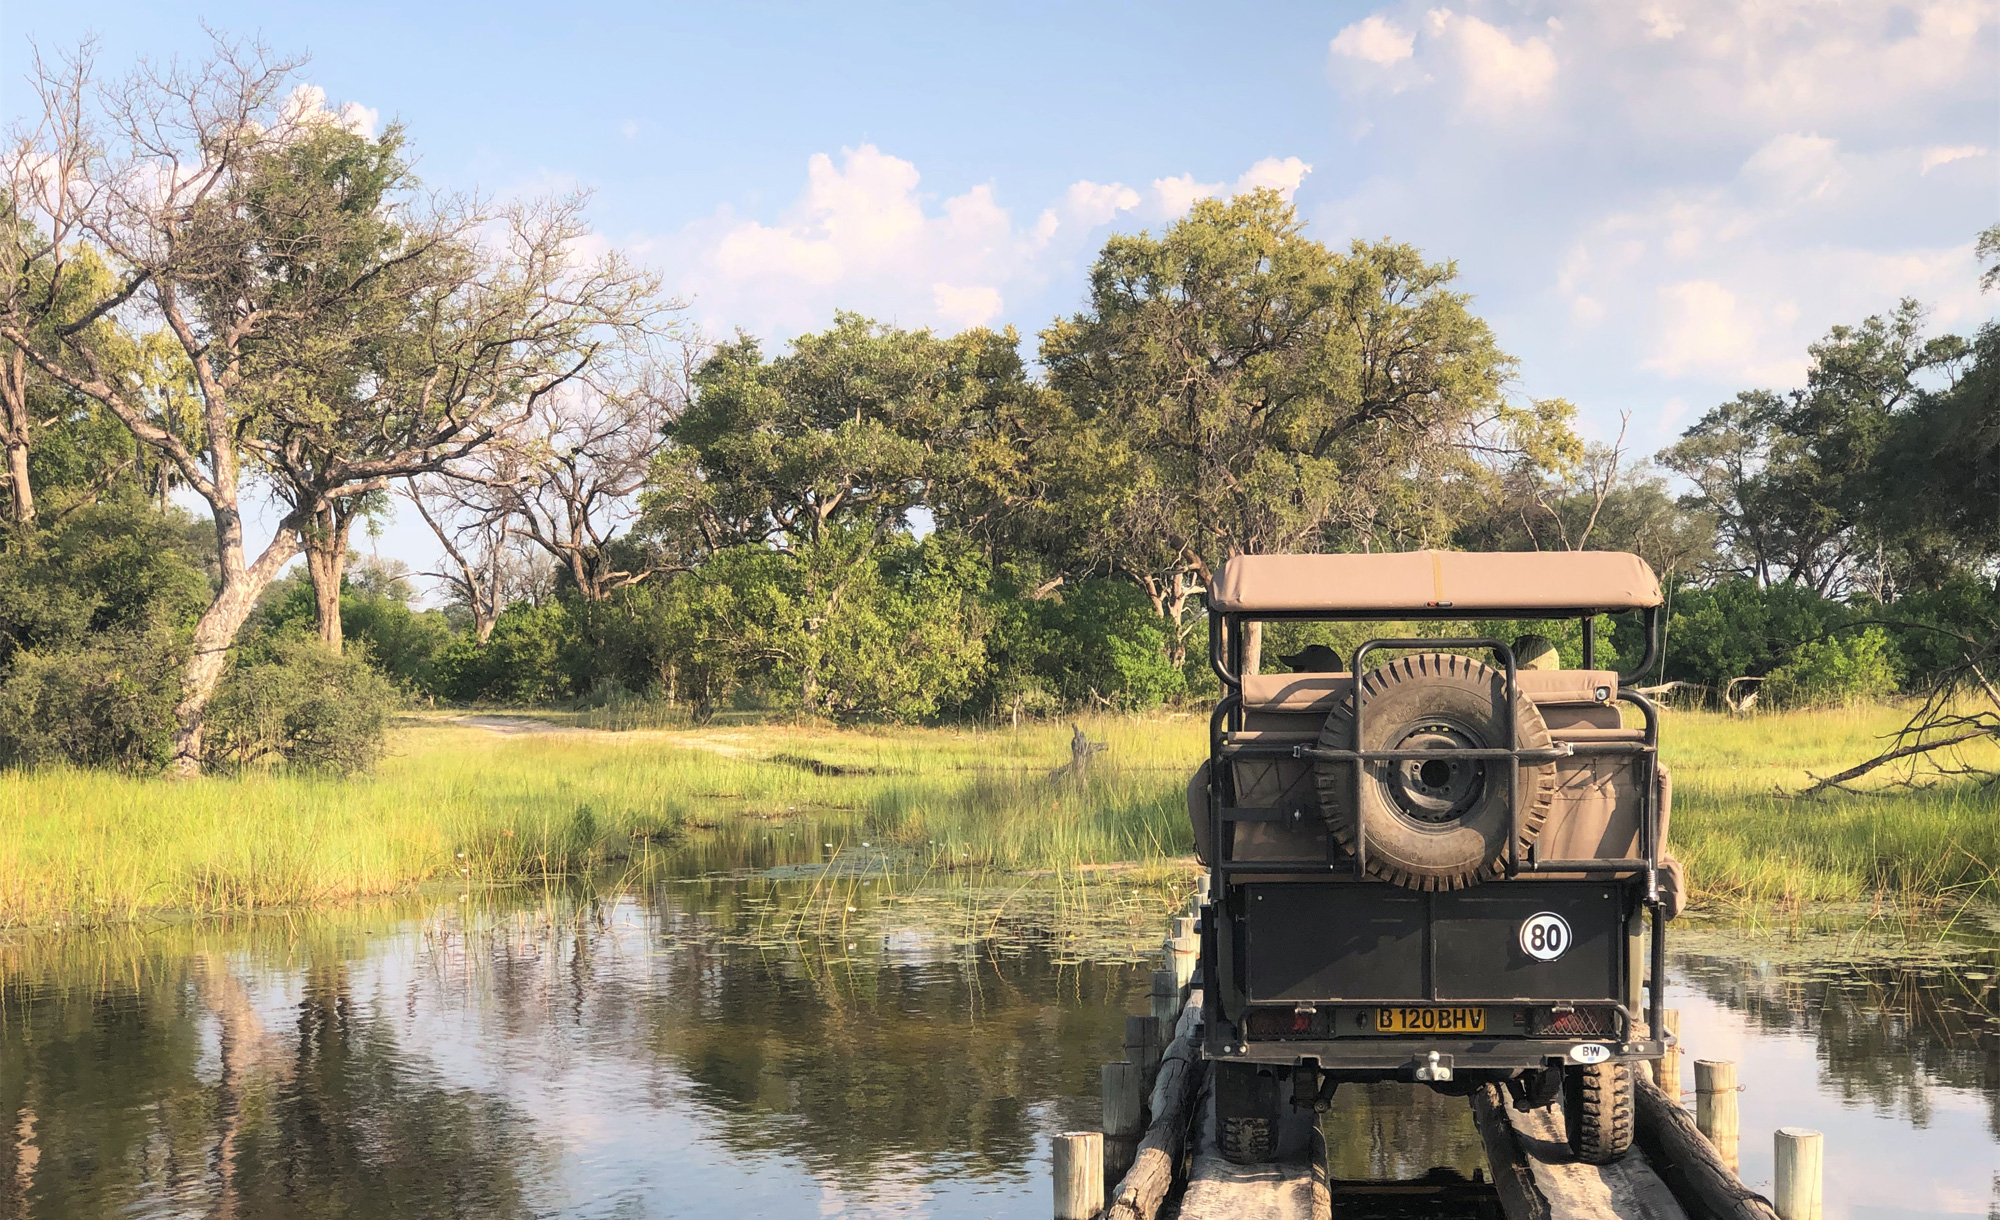 Vumbura Bridge, Okavango Delta courtesy Trish Berry for Wilderness Safaris